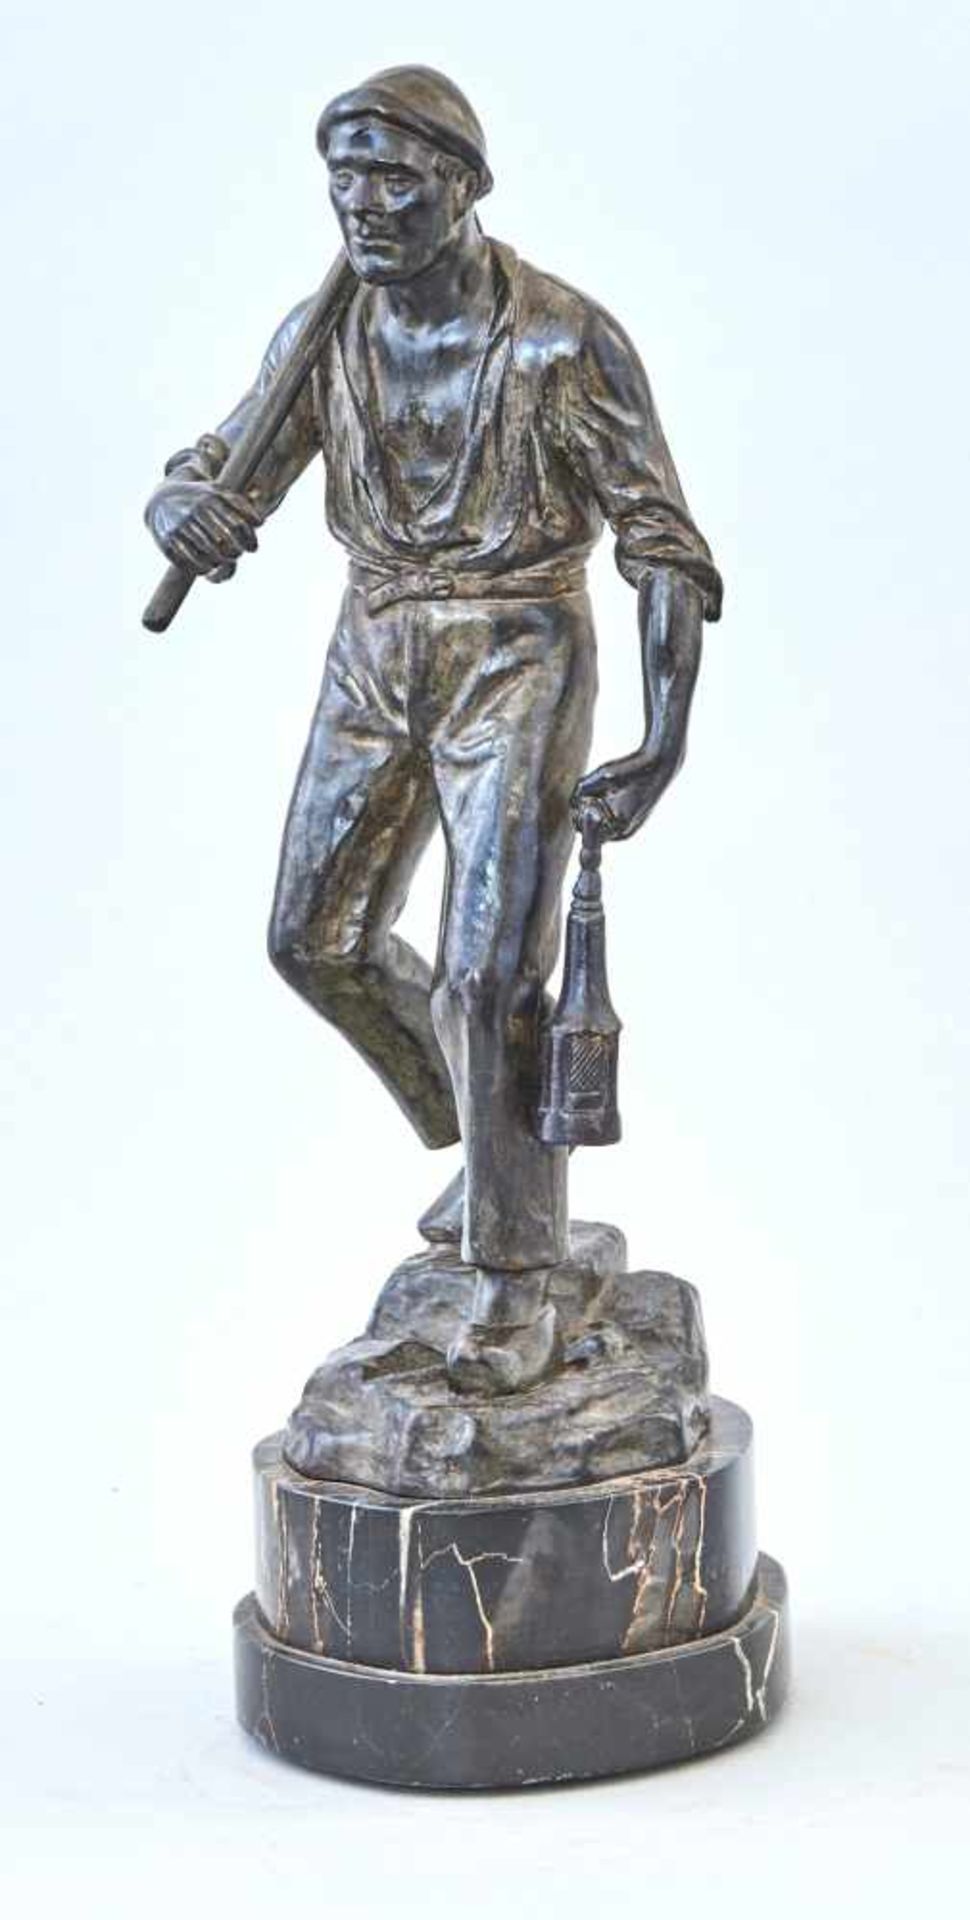 Bronzeskulptur 'Arbeiter'Dunkel patiniert, auf Marmorsockel. Höhe gesamt 30,5 cm